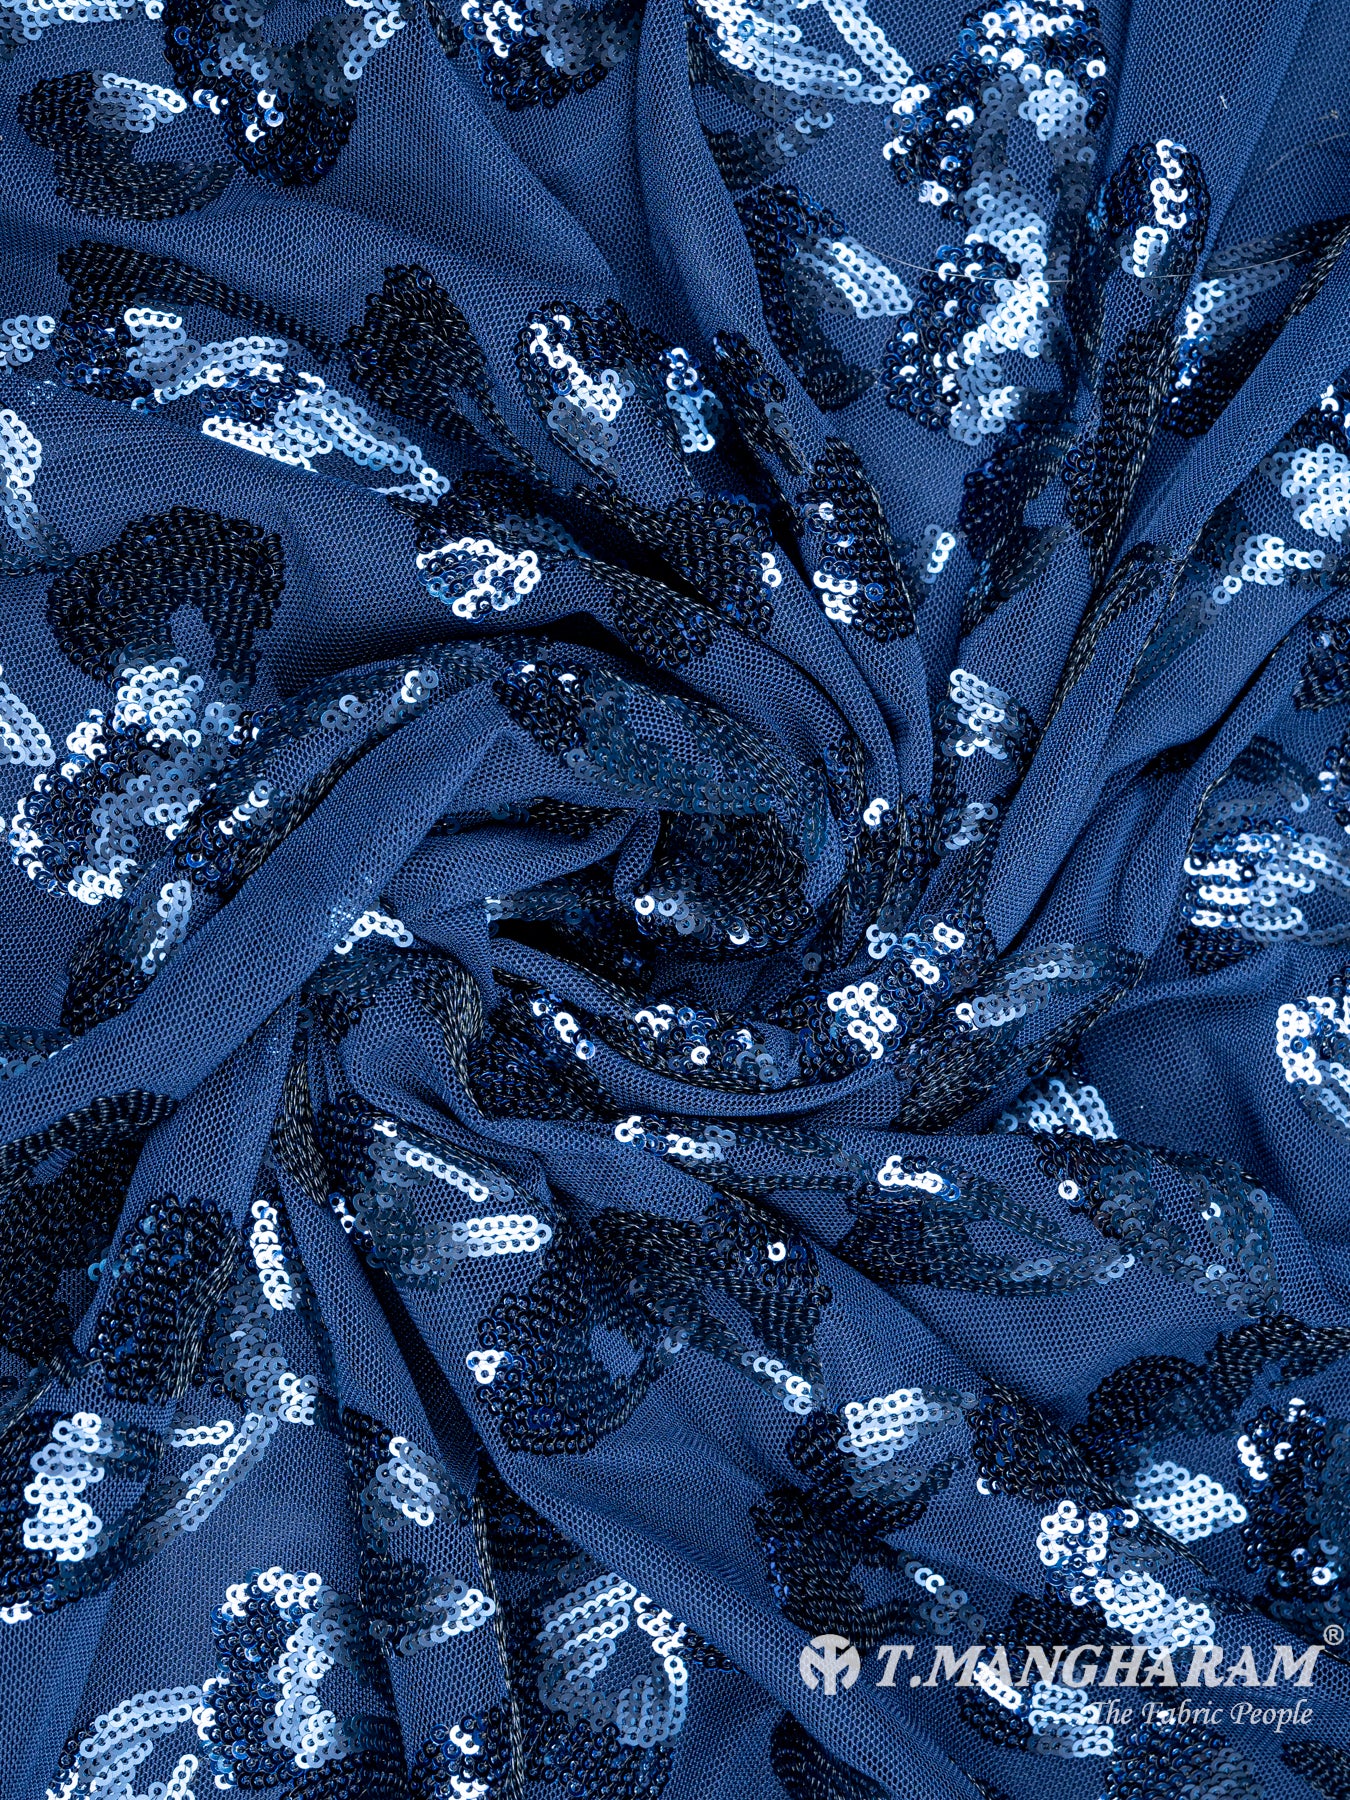 Blue Fancy Net Fabric - EC4444 view-1